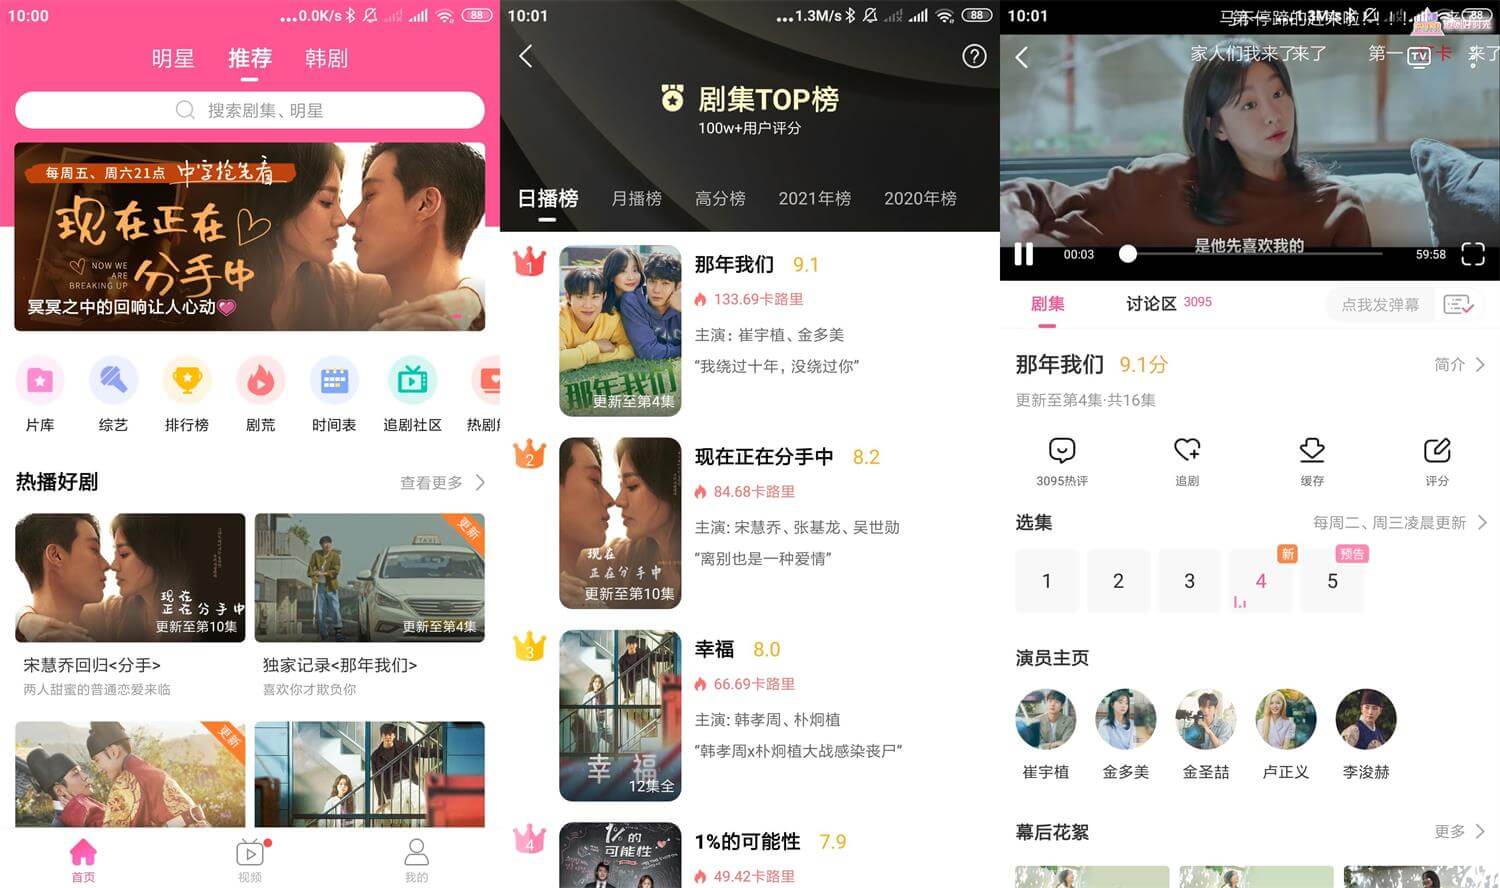 Android 韩剧TV Lite v1.0.0 去除广告极简版-无痕哥